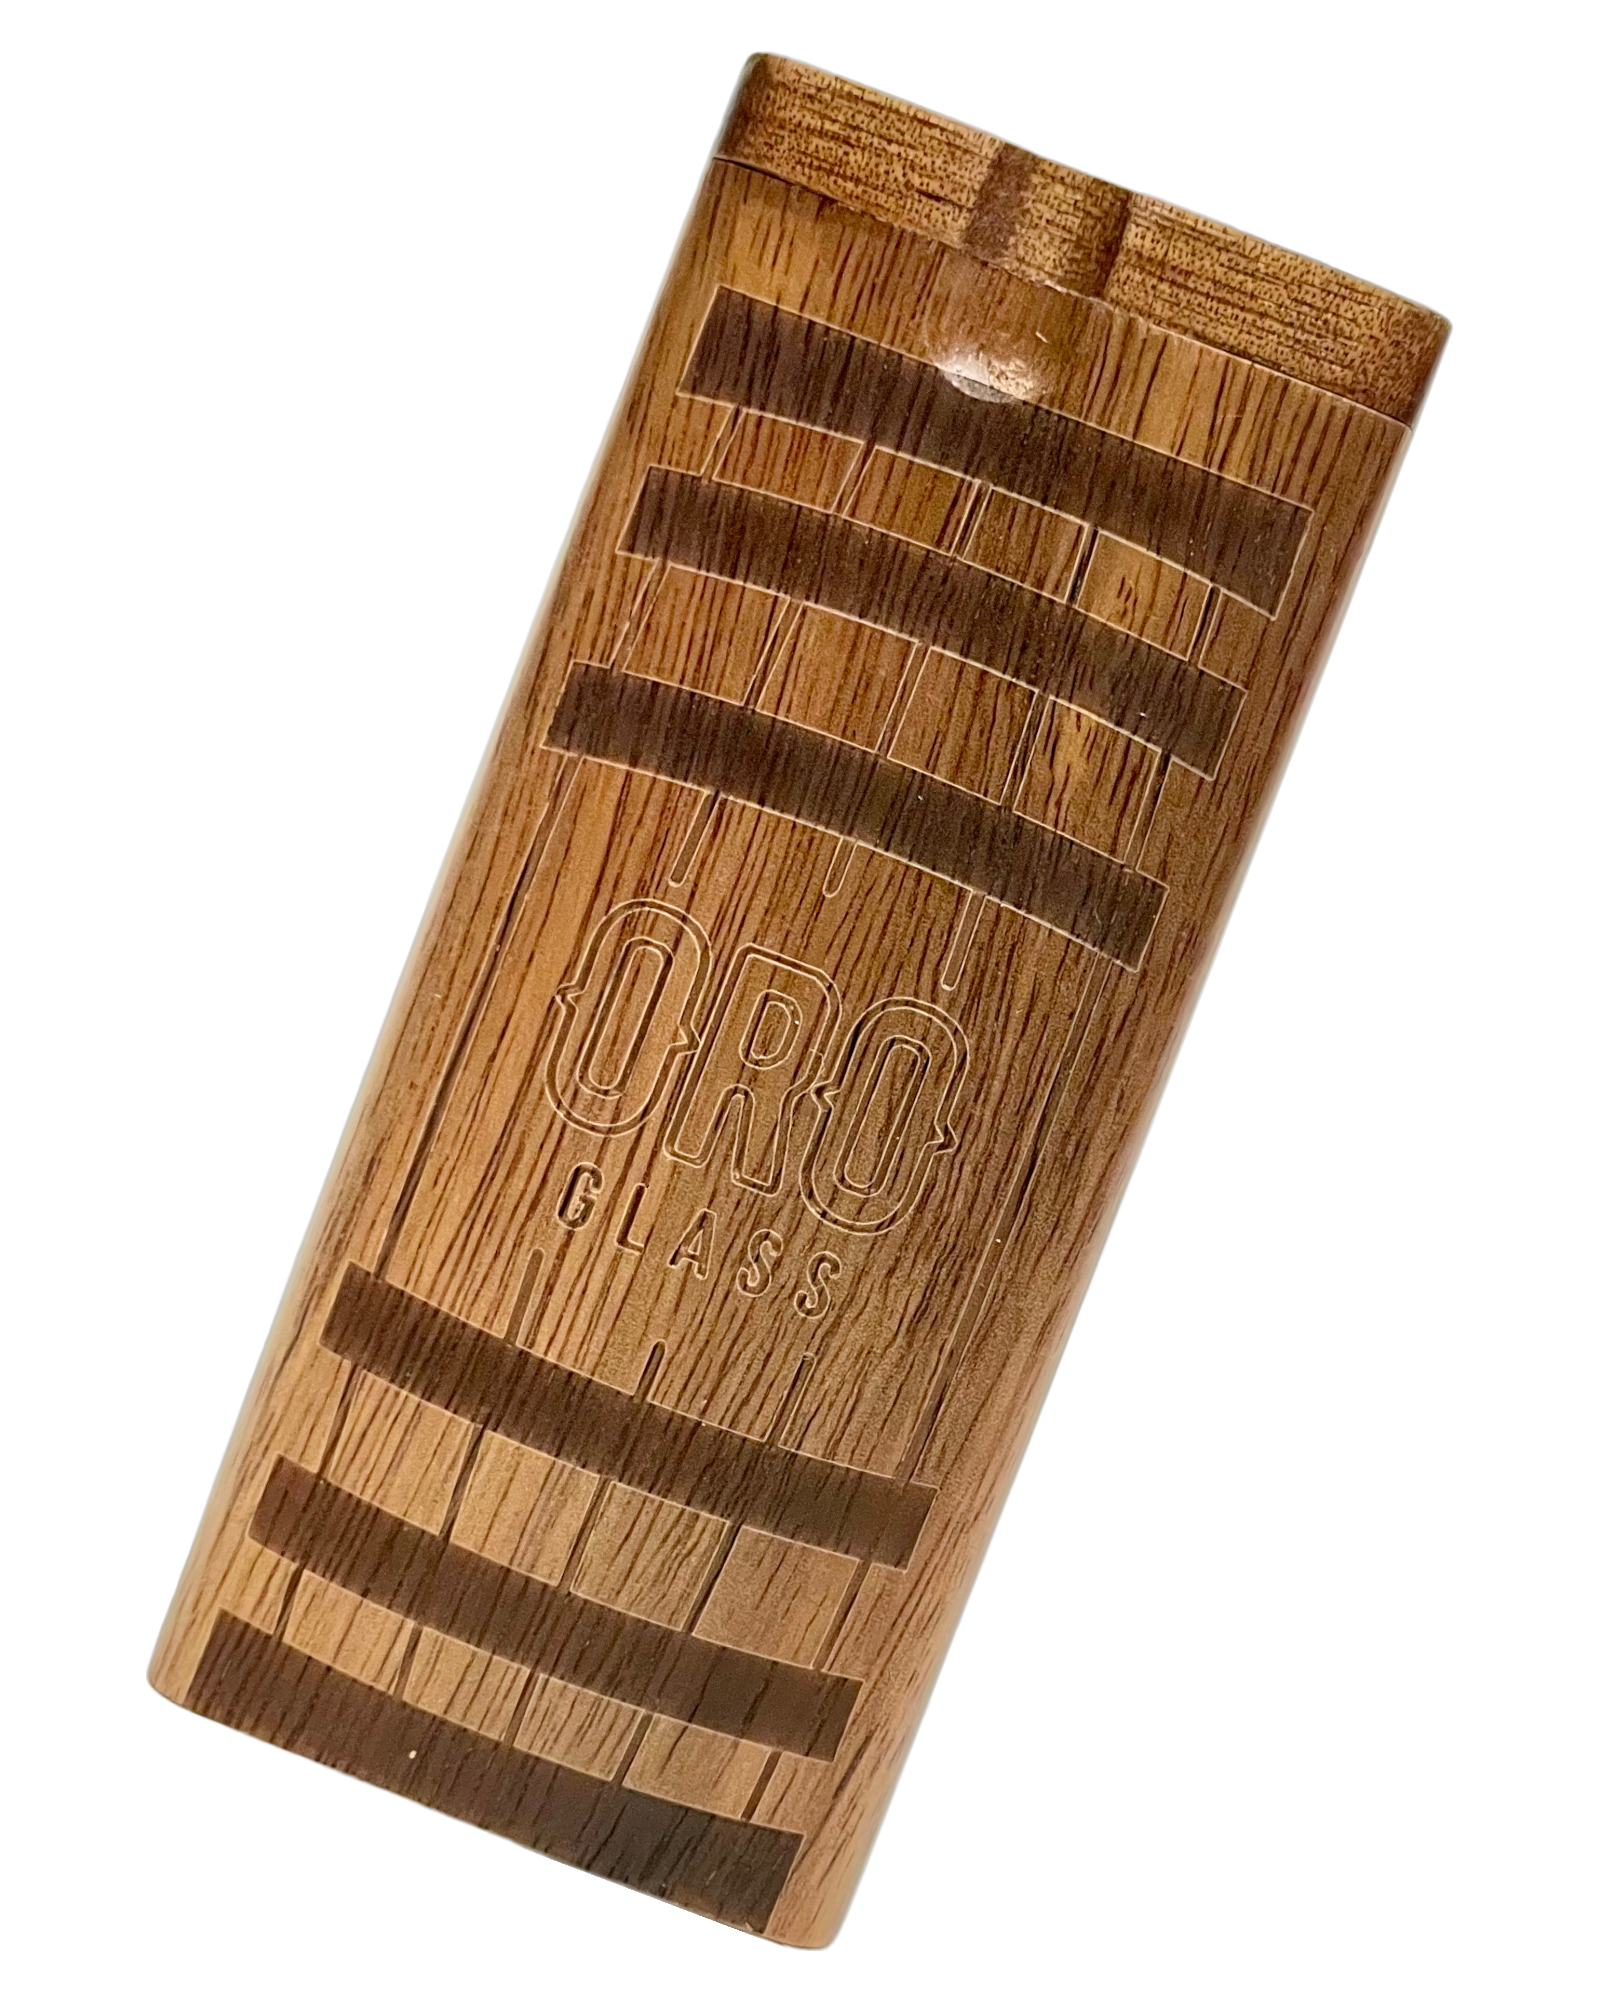 An Oro Barrel Wooden Dugout.